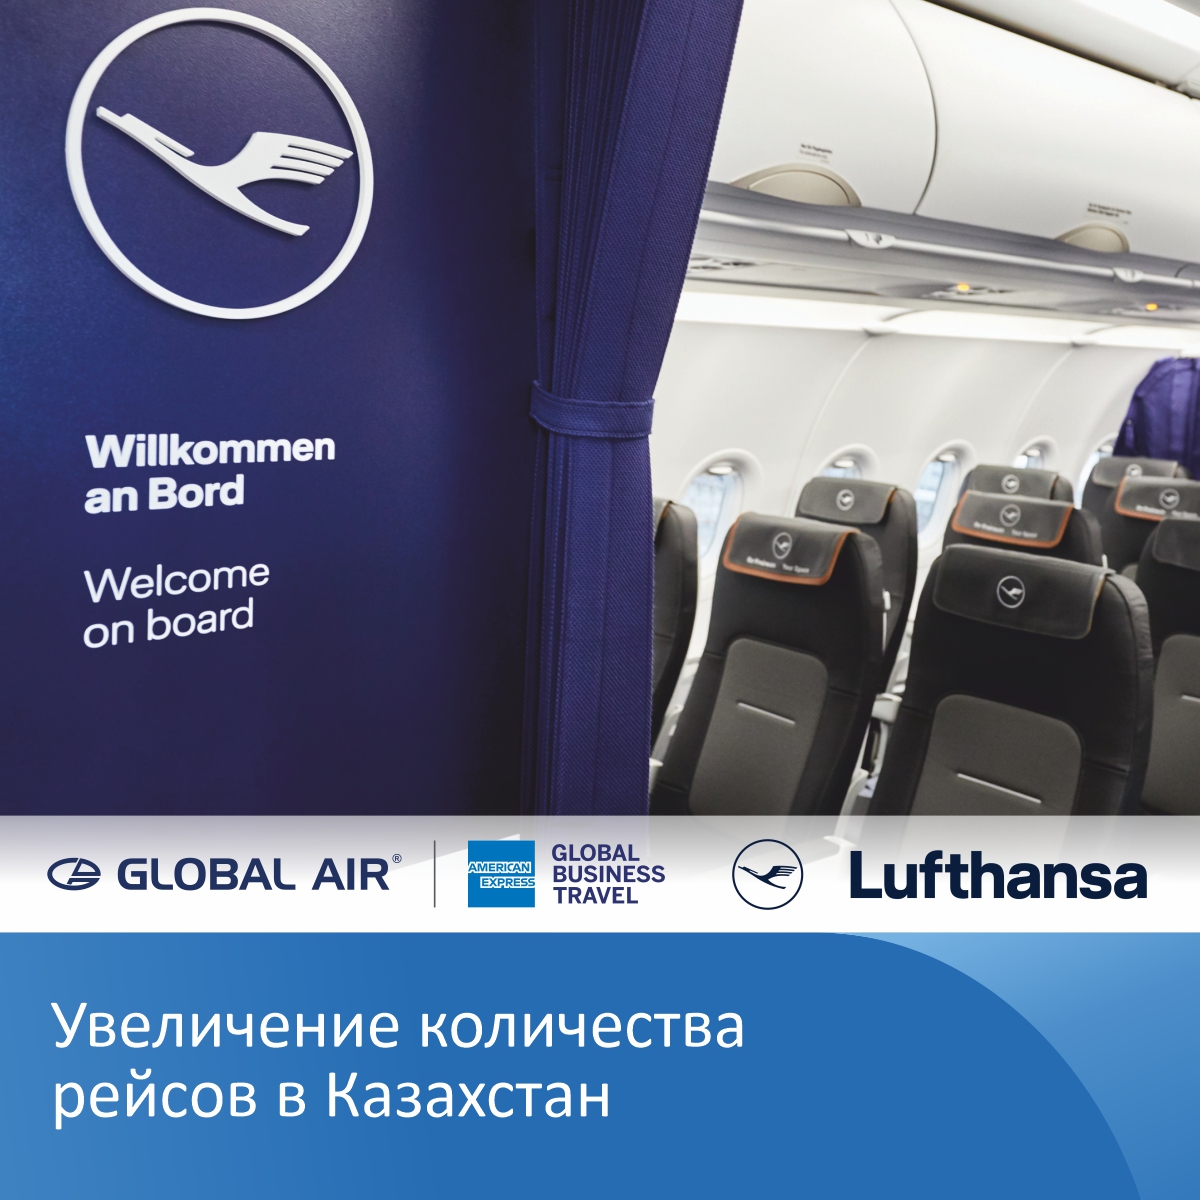 До конца октября авиакомпания Lufthansa увеличила количество рейсов в Казахстан до 4 в неделю.